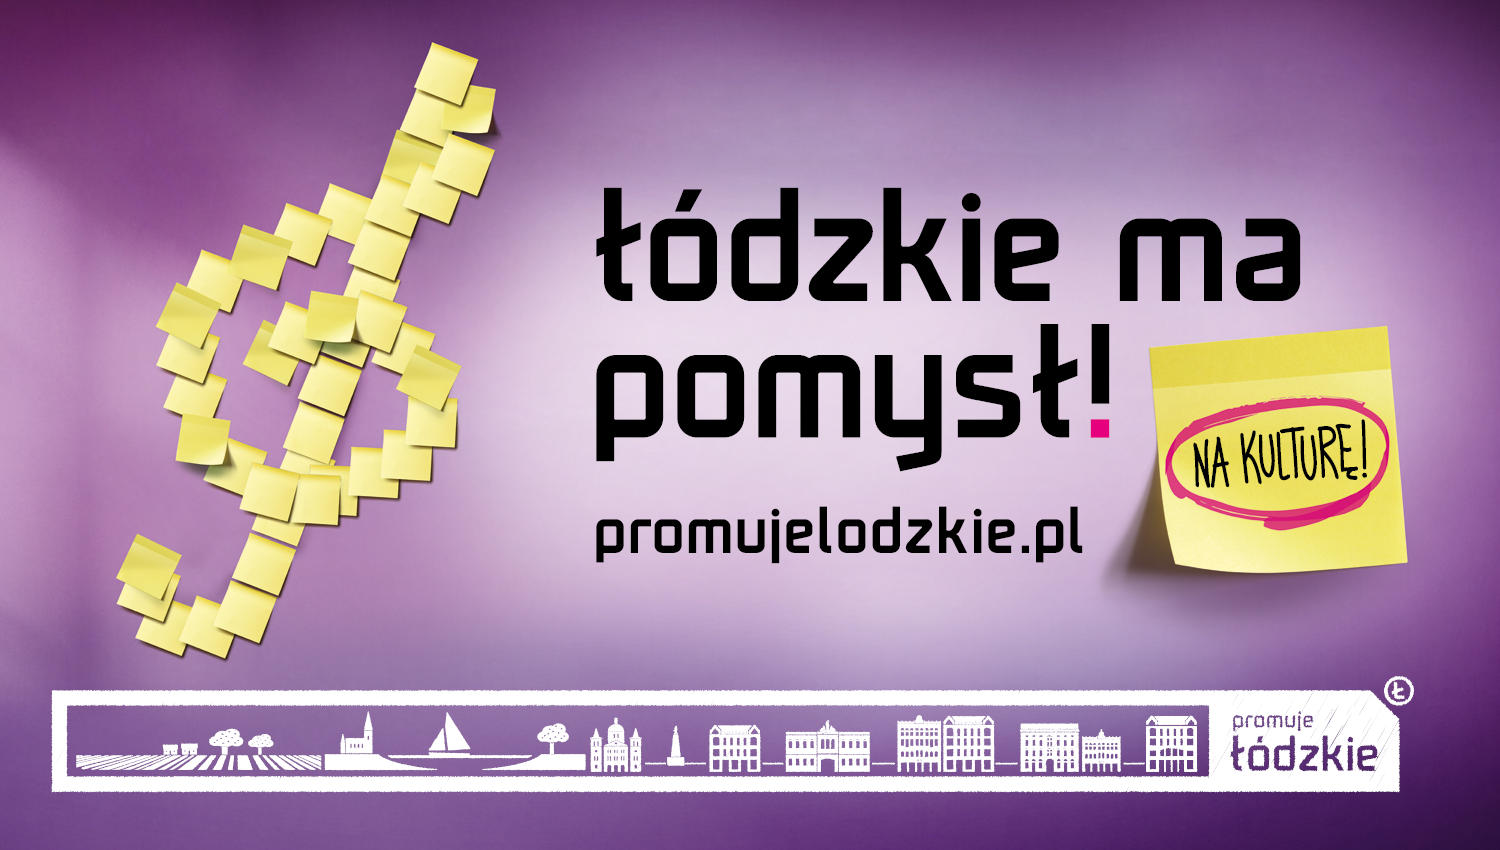 Eskadra - Łódzkie has an idea! - The Marshal Office of the Lodzkie Region